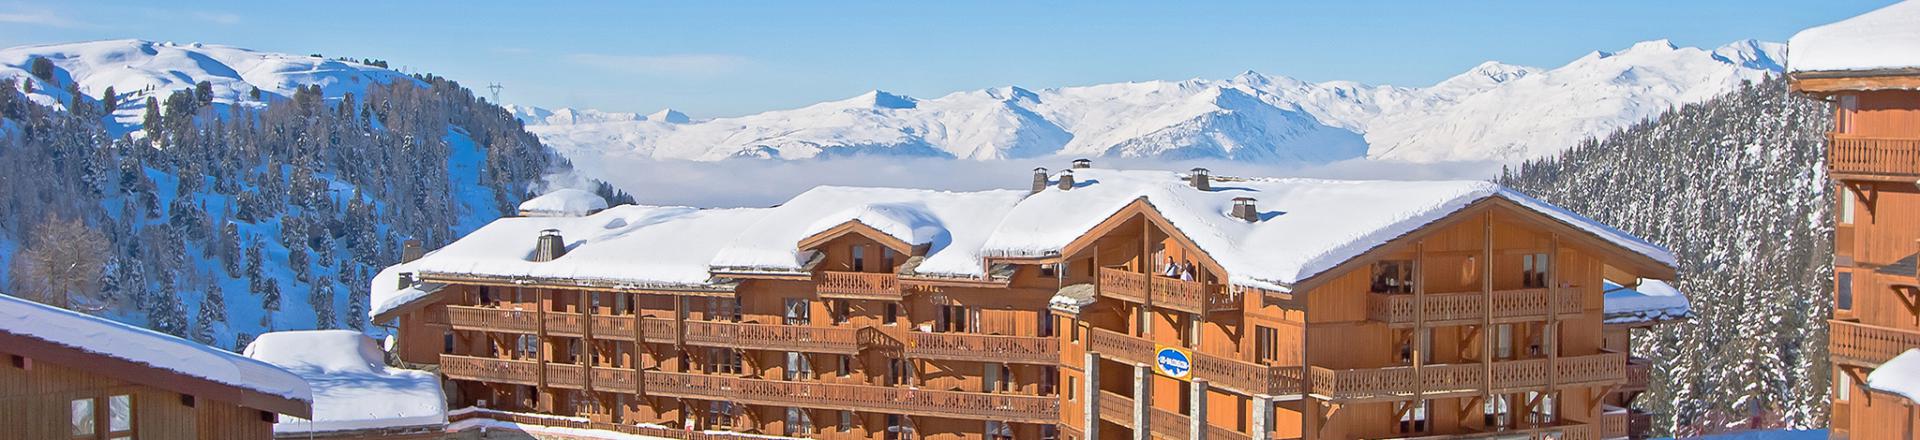 Location au ski Les Balcons de Belle Plagne - La Plagne - Extérieur hiver